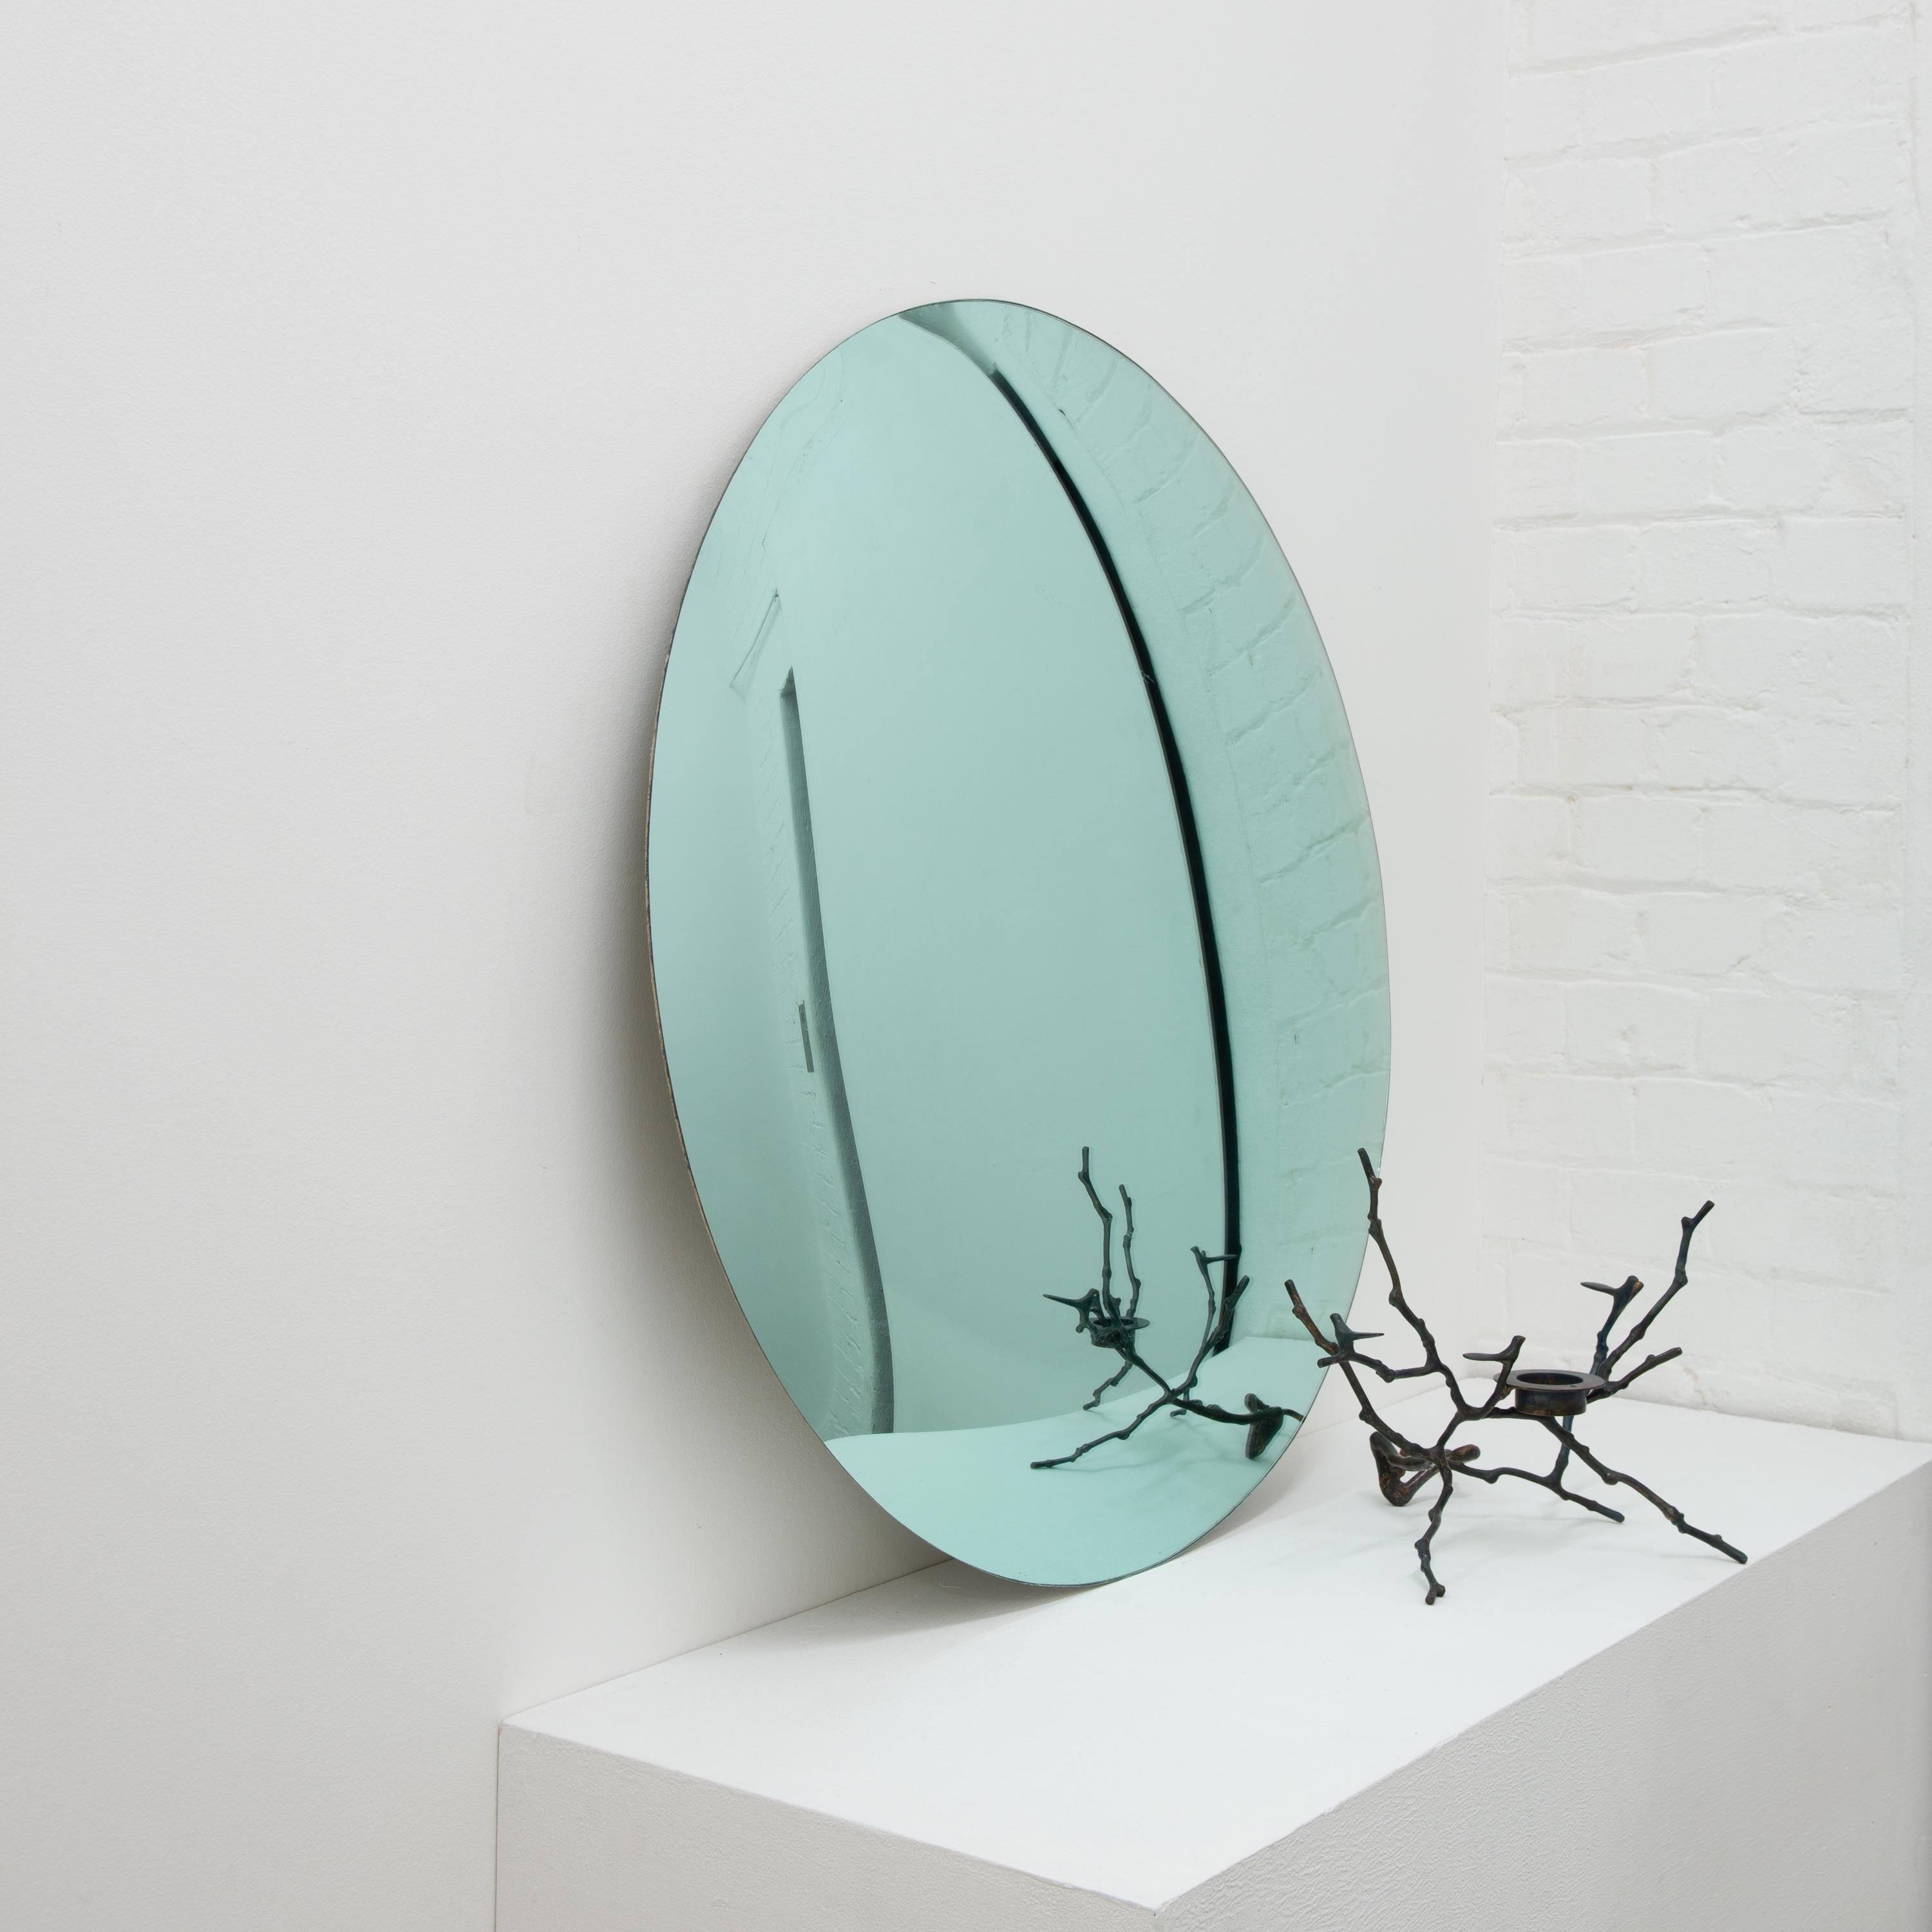 Miroir convexe contemporain teinté vert sans cadre.

Chaque miroir convexe Orbis™ est conçu et fabriqué à la main à Londres, au Royaume-Uni. De légères variations de taille et des imperfections sur les bords et les finitions de surface sont des